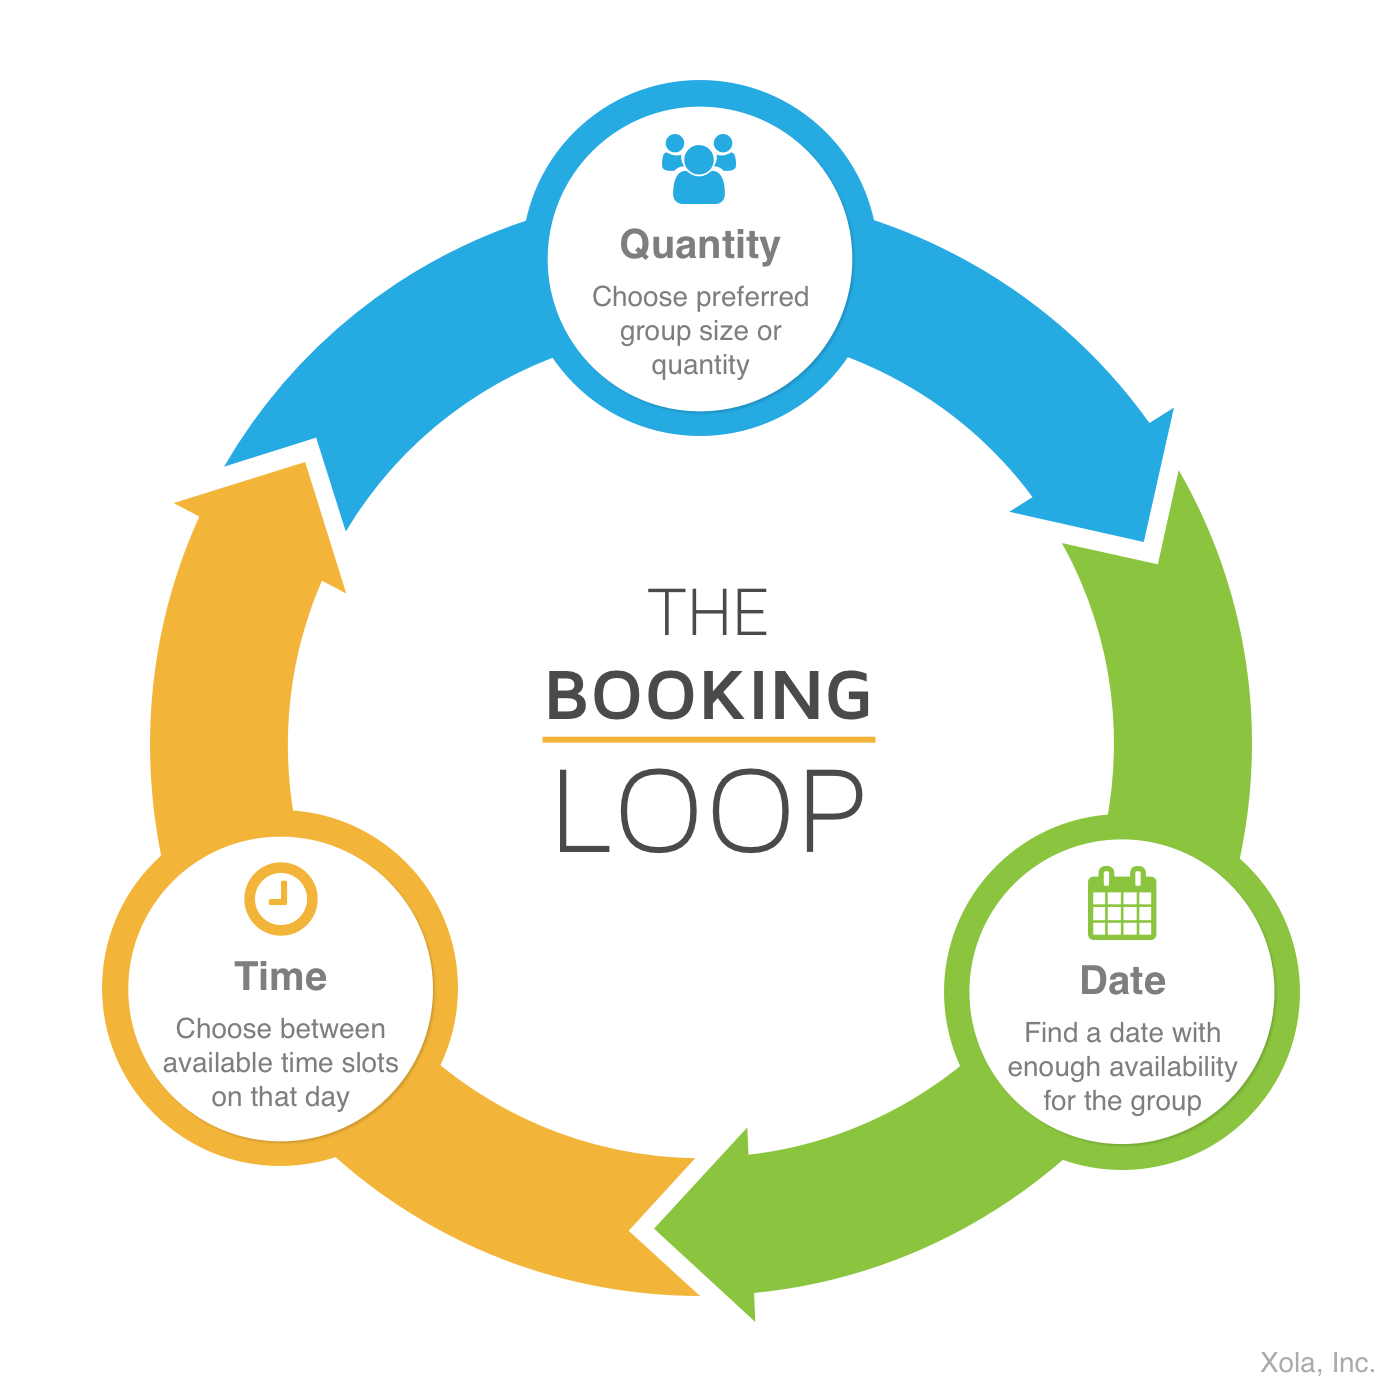 The Booking Loop